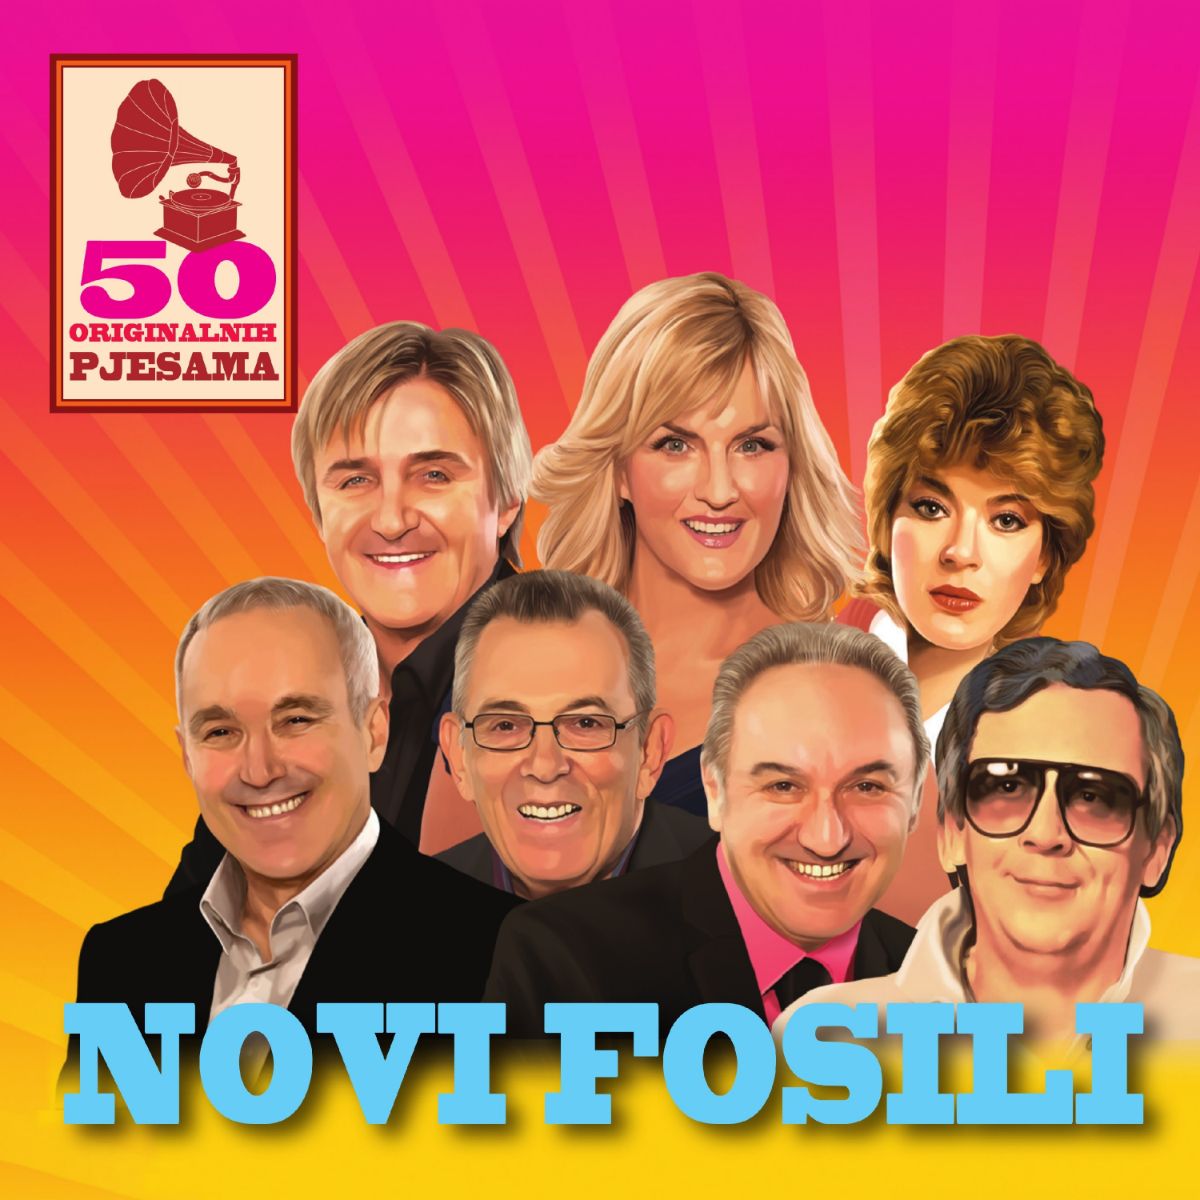 “50 originalnih pjesama” za 50 godina najbolje hrvatske pop skupine Novi Fosili